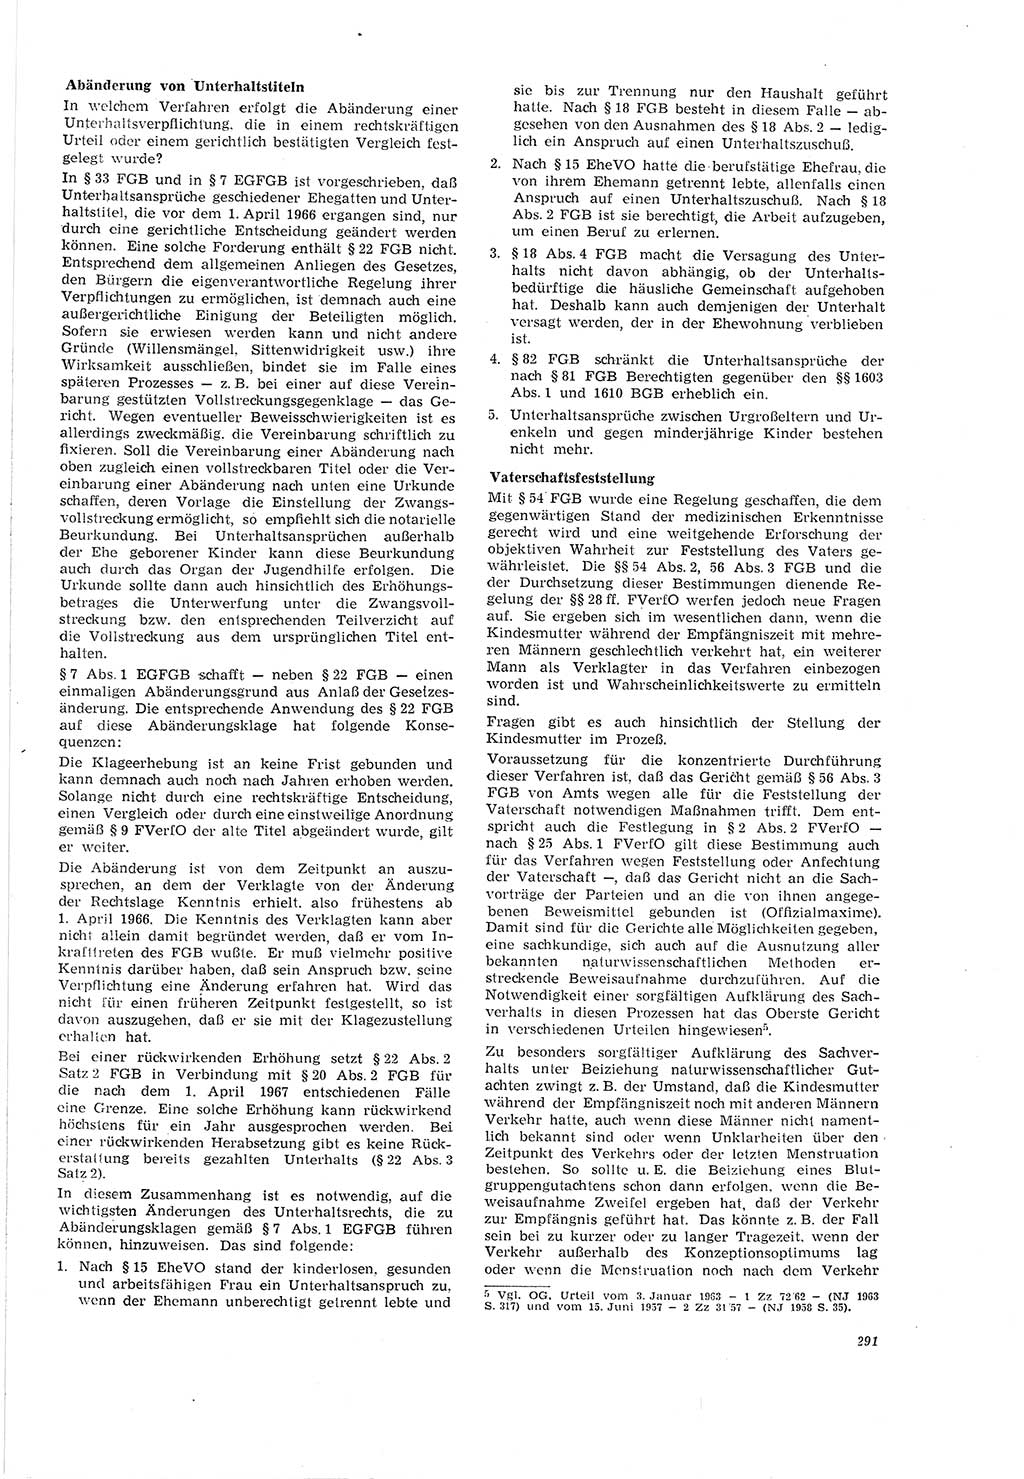 Neue Justiz (NJ), Zeitschrift für Recht und Rechtswissenschaft [Deutsche Demokratische Republik (DDR)], 20. Jahrgang 1966, Seite 291 (NJ DDR 1966, S. 291)